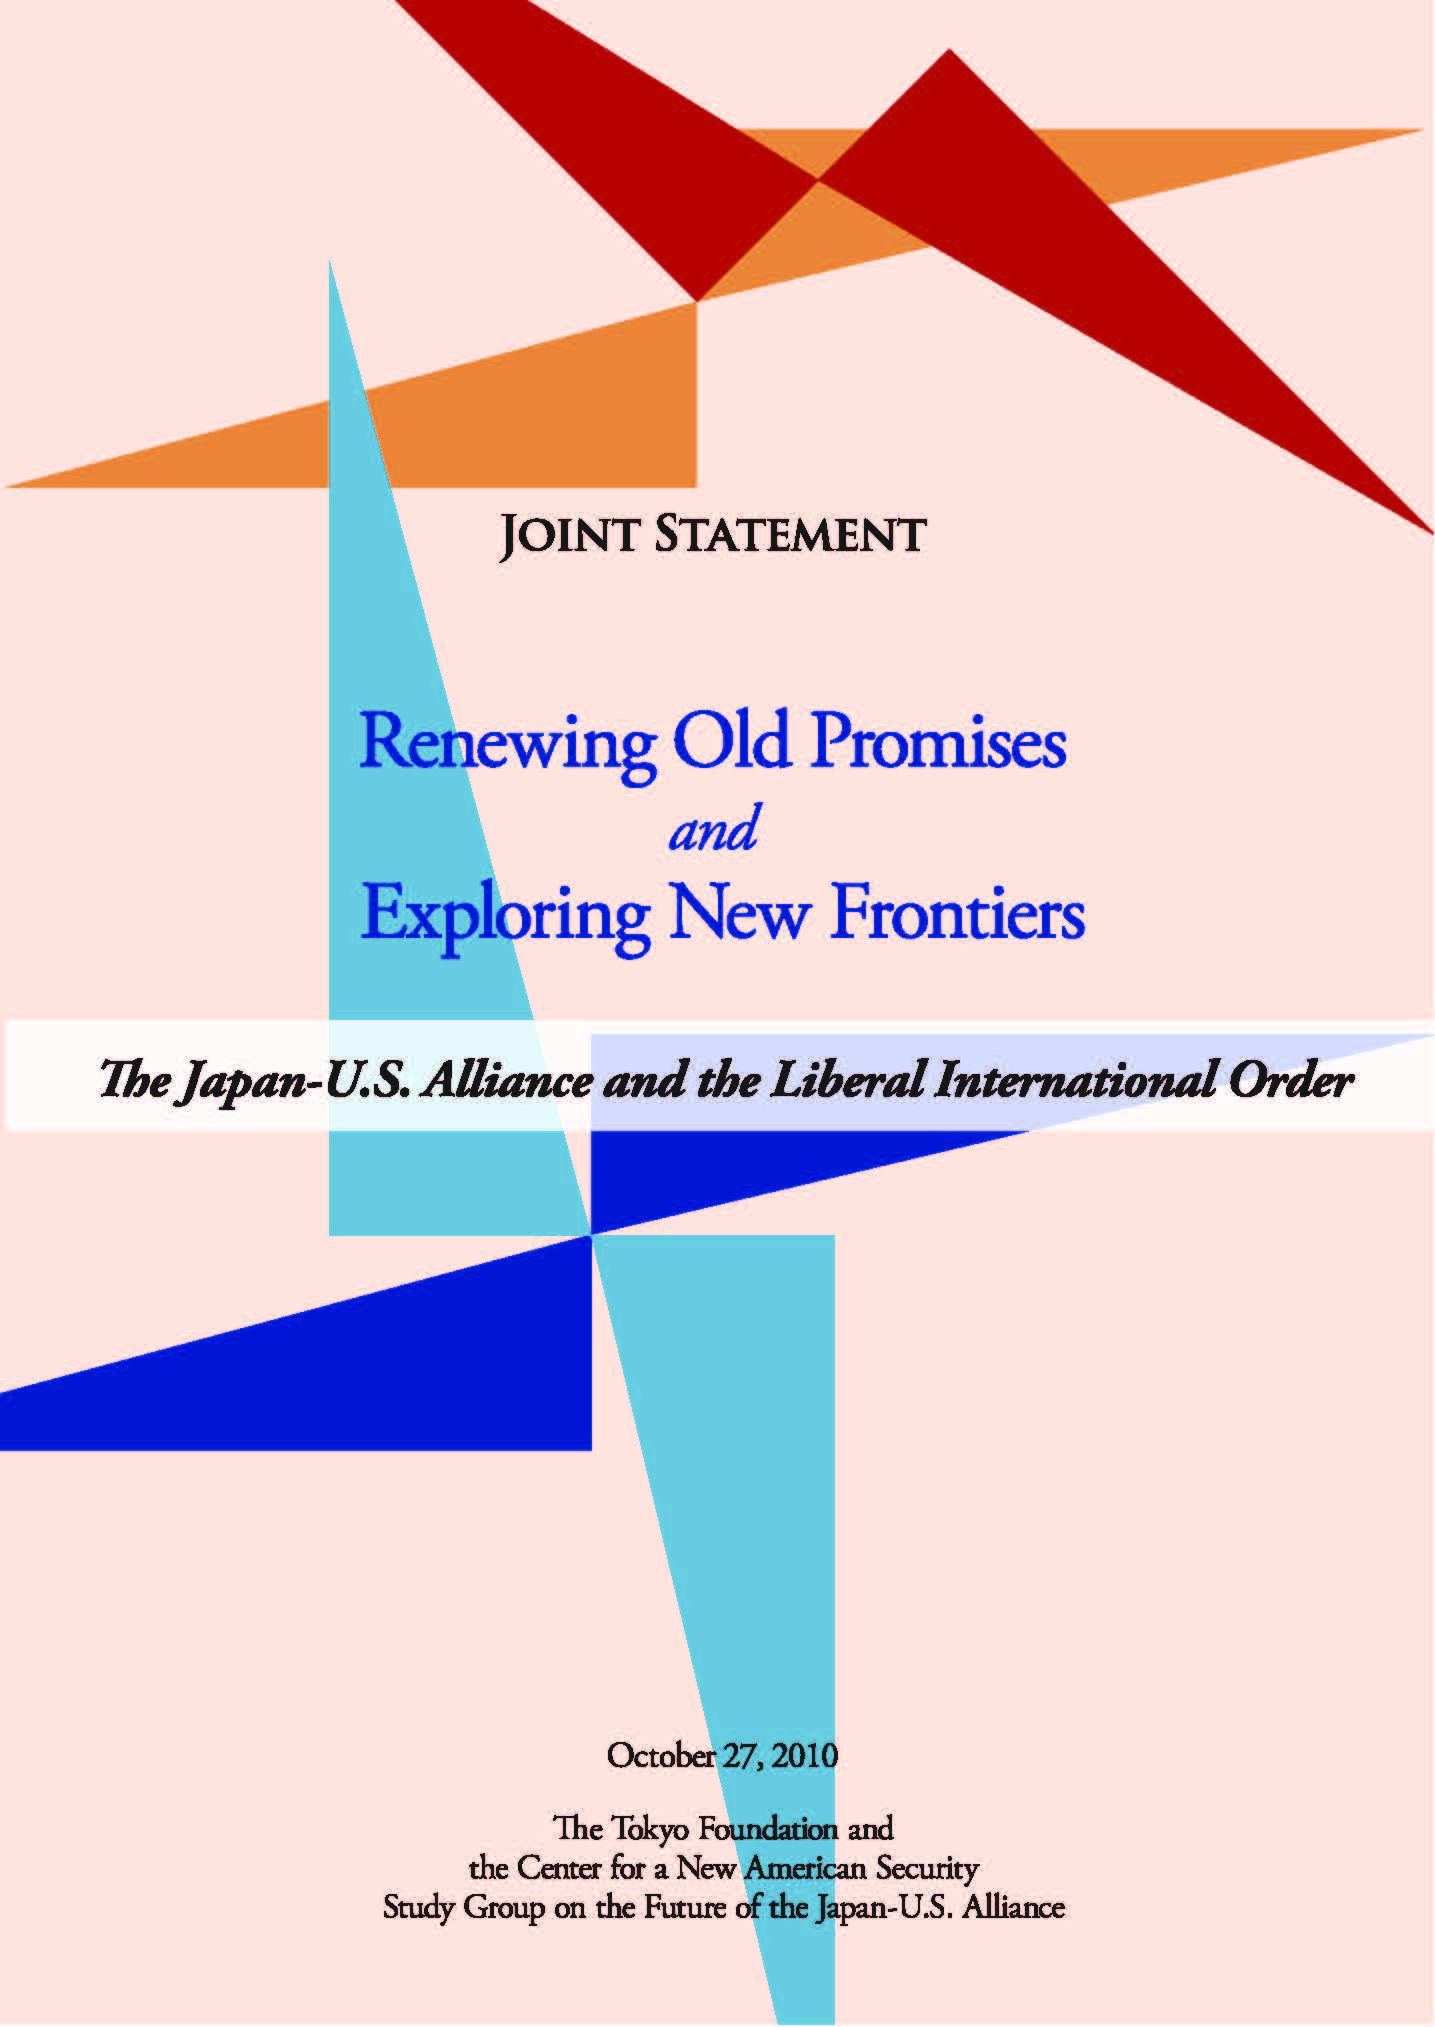 「従来の約束」の刷新と「新しいフロンティア」の開拓――日米同盟と「自由で開かれた国際秩序」 Renewing Old Promises and Exploring New Frontiers